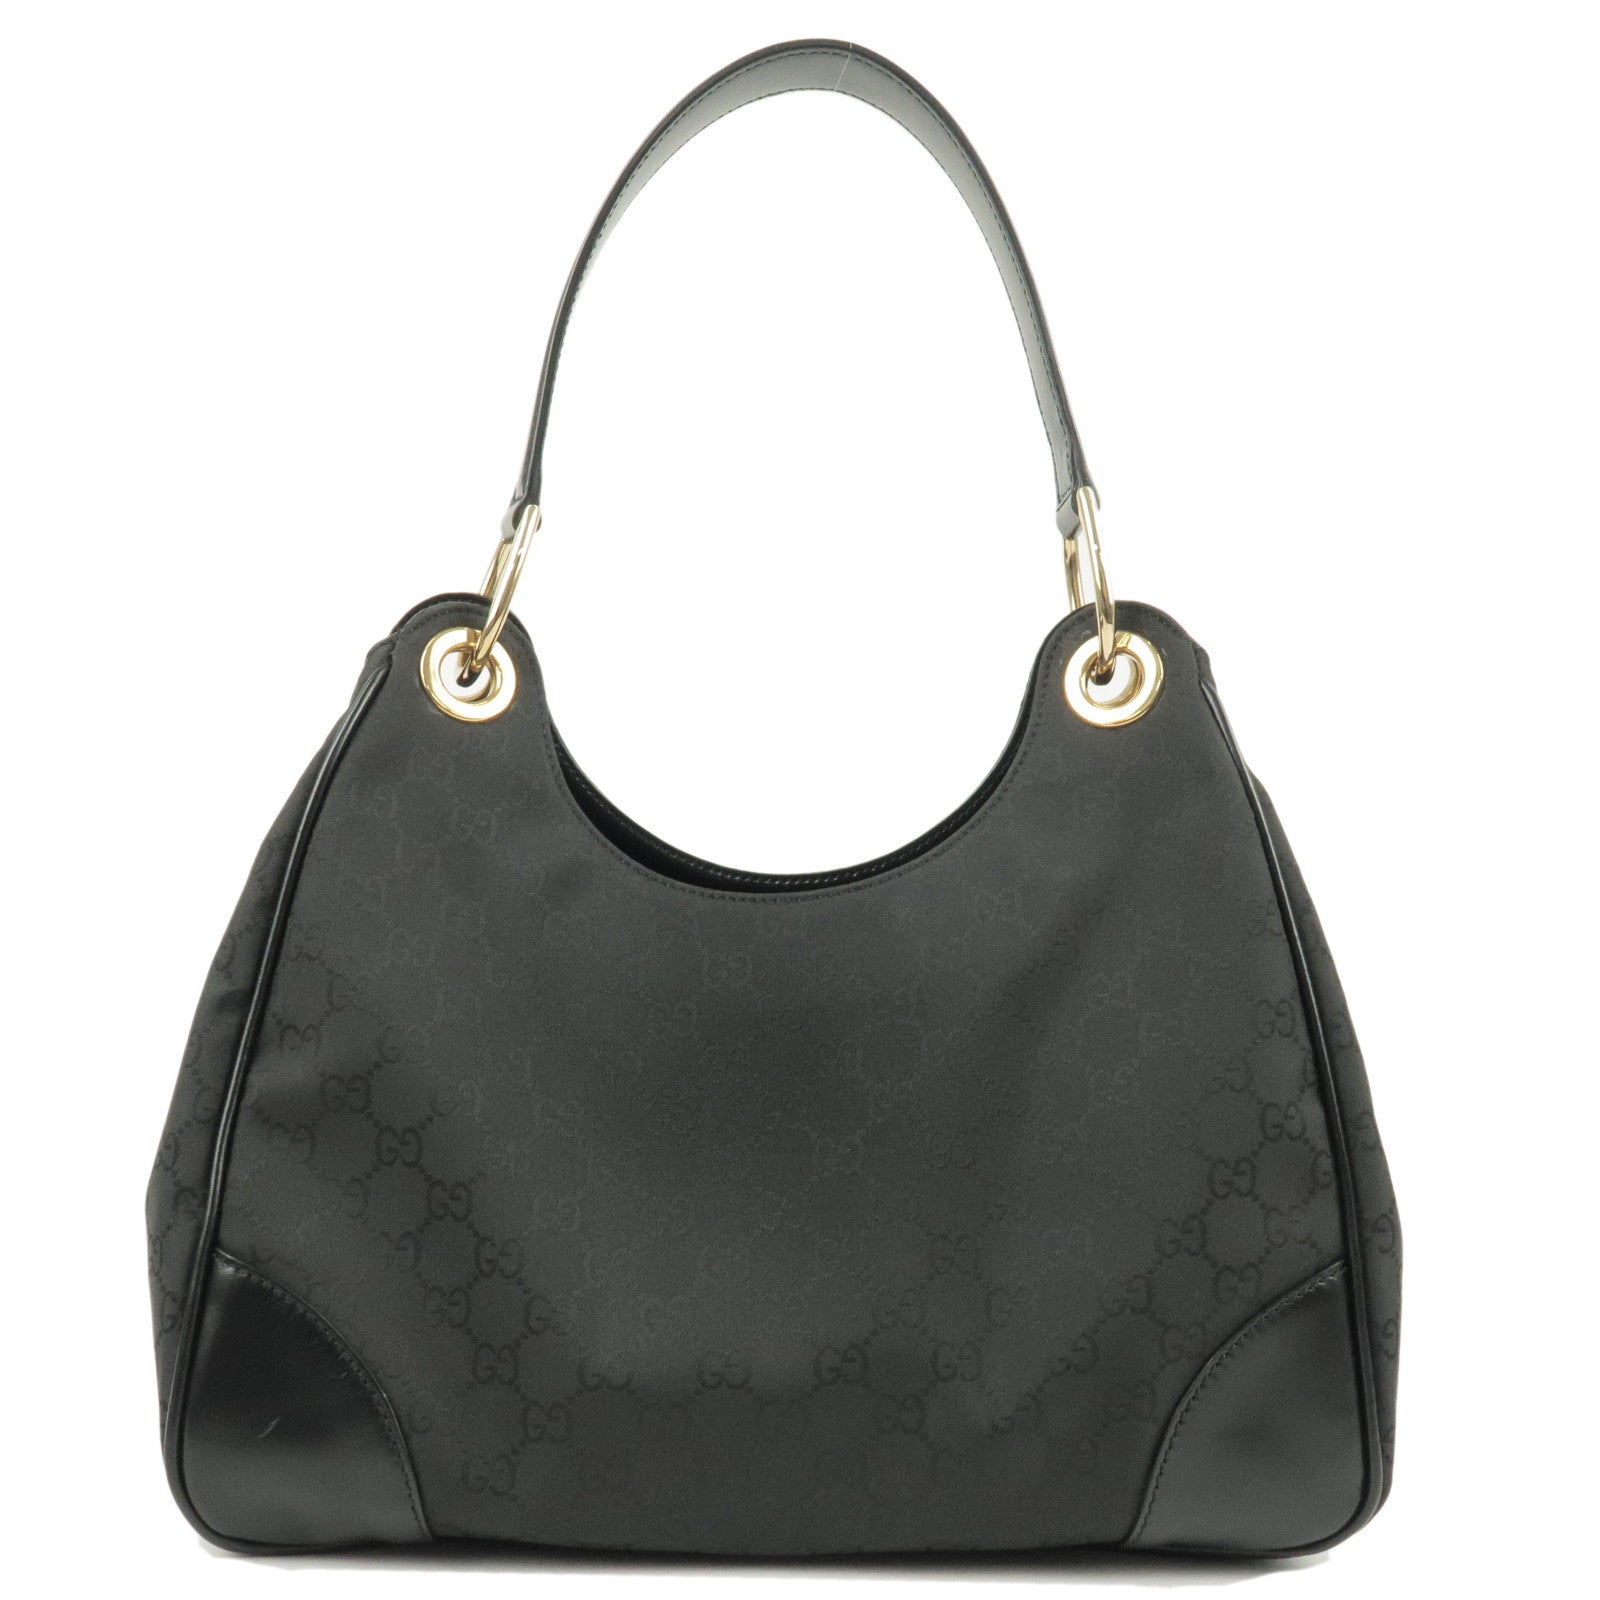 GUCCI-GG-Nylon-Leather-Shoulder-Bag-Hand-Bag-Black-257265 – dct